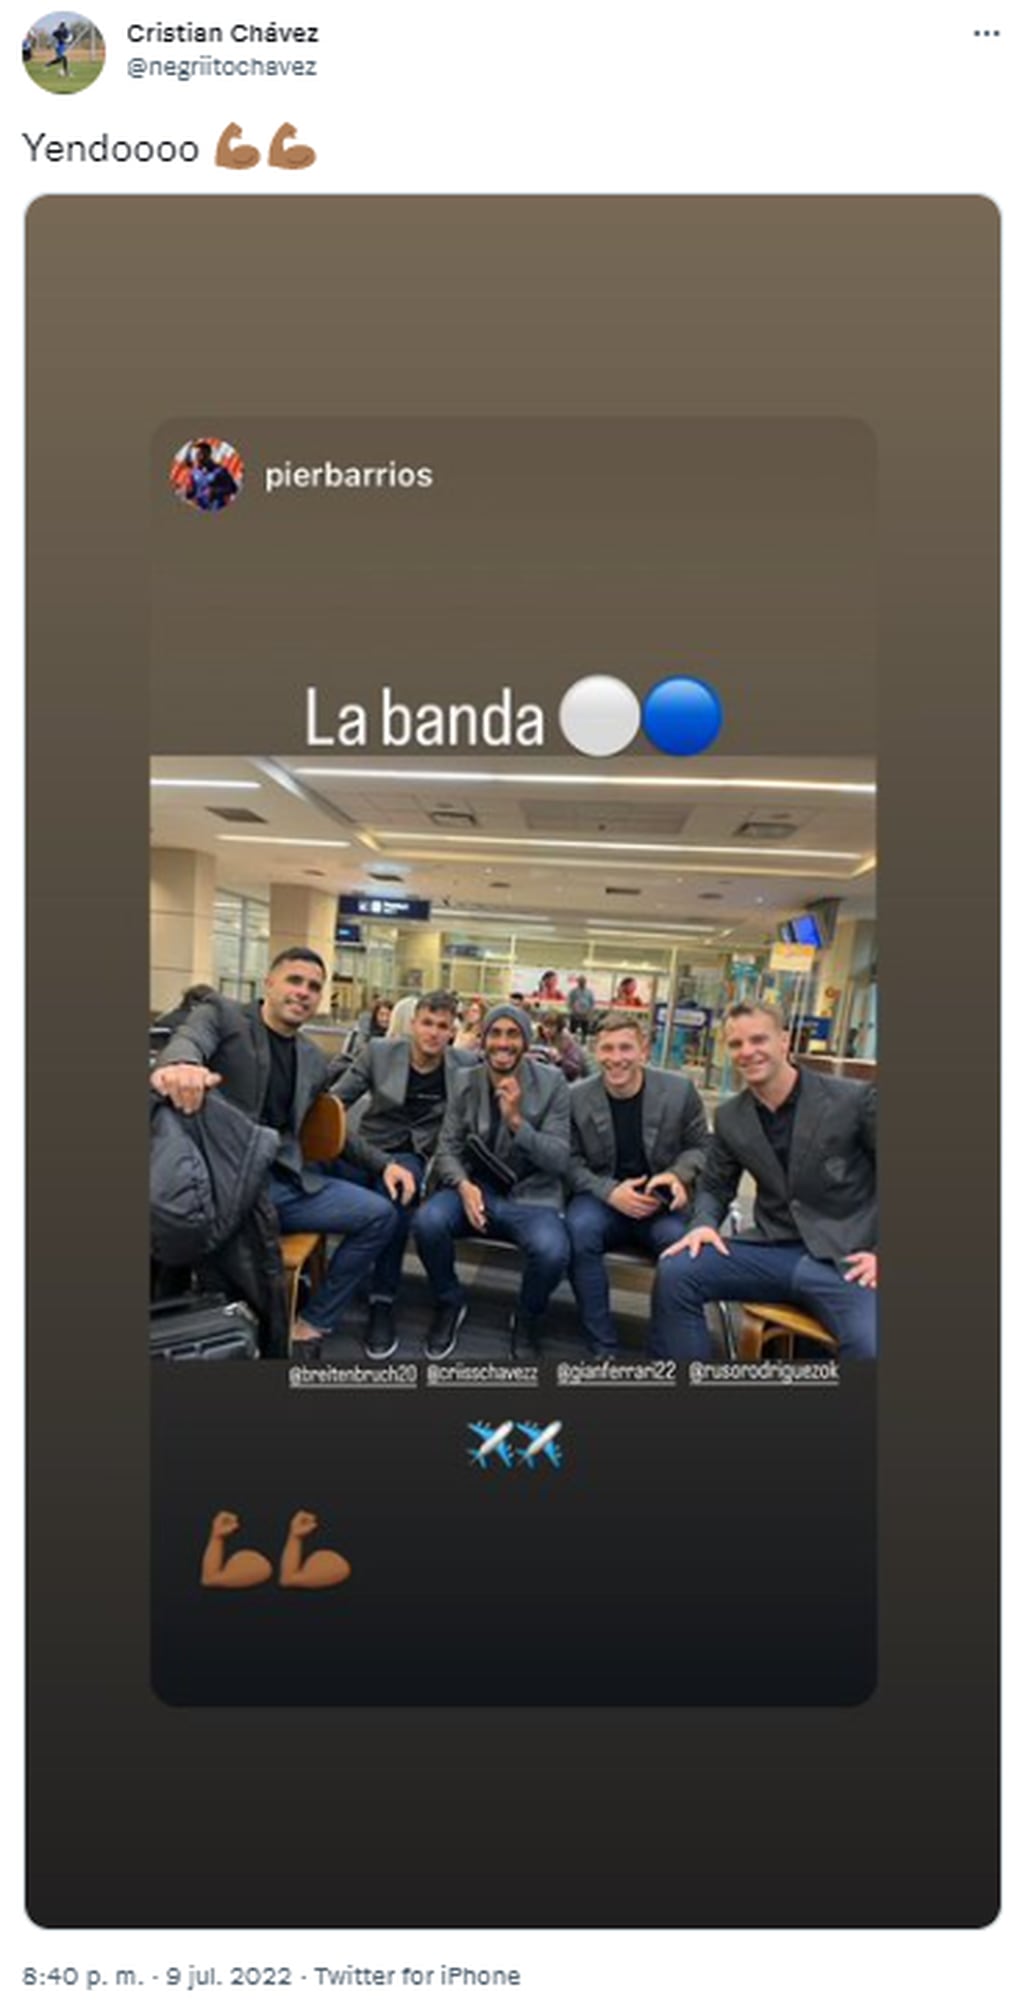 El jugador de Godoy Cruz Cristian Chávez también compartió en sus redes una imagen inédita del plantel esperando por su vuelo en el aeropuerto, imagen que fue compartida en las historias anteriormente por su compañero Pier Barrios.